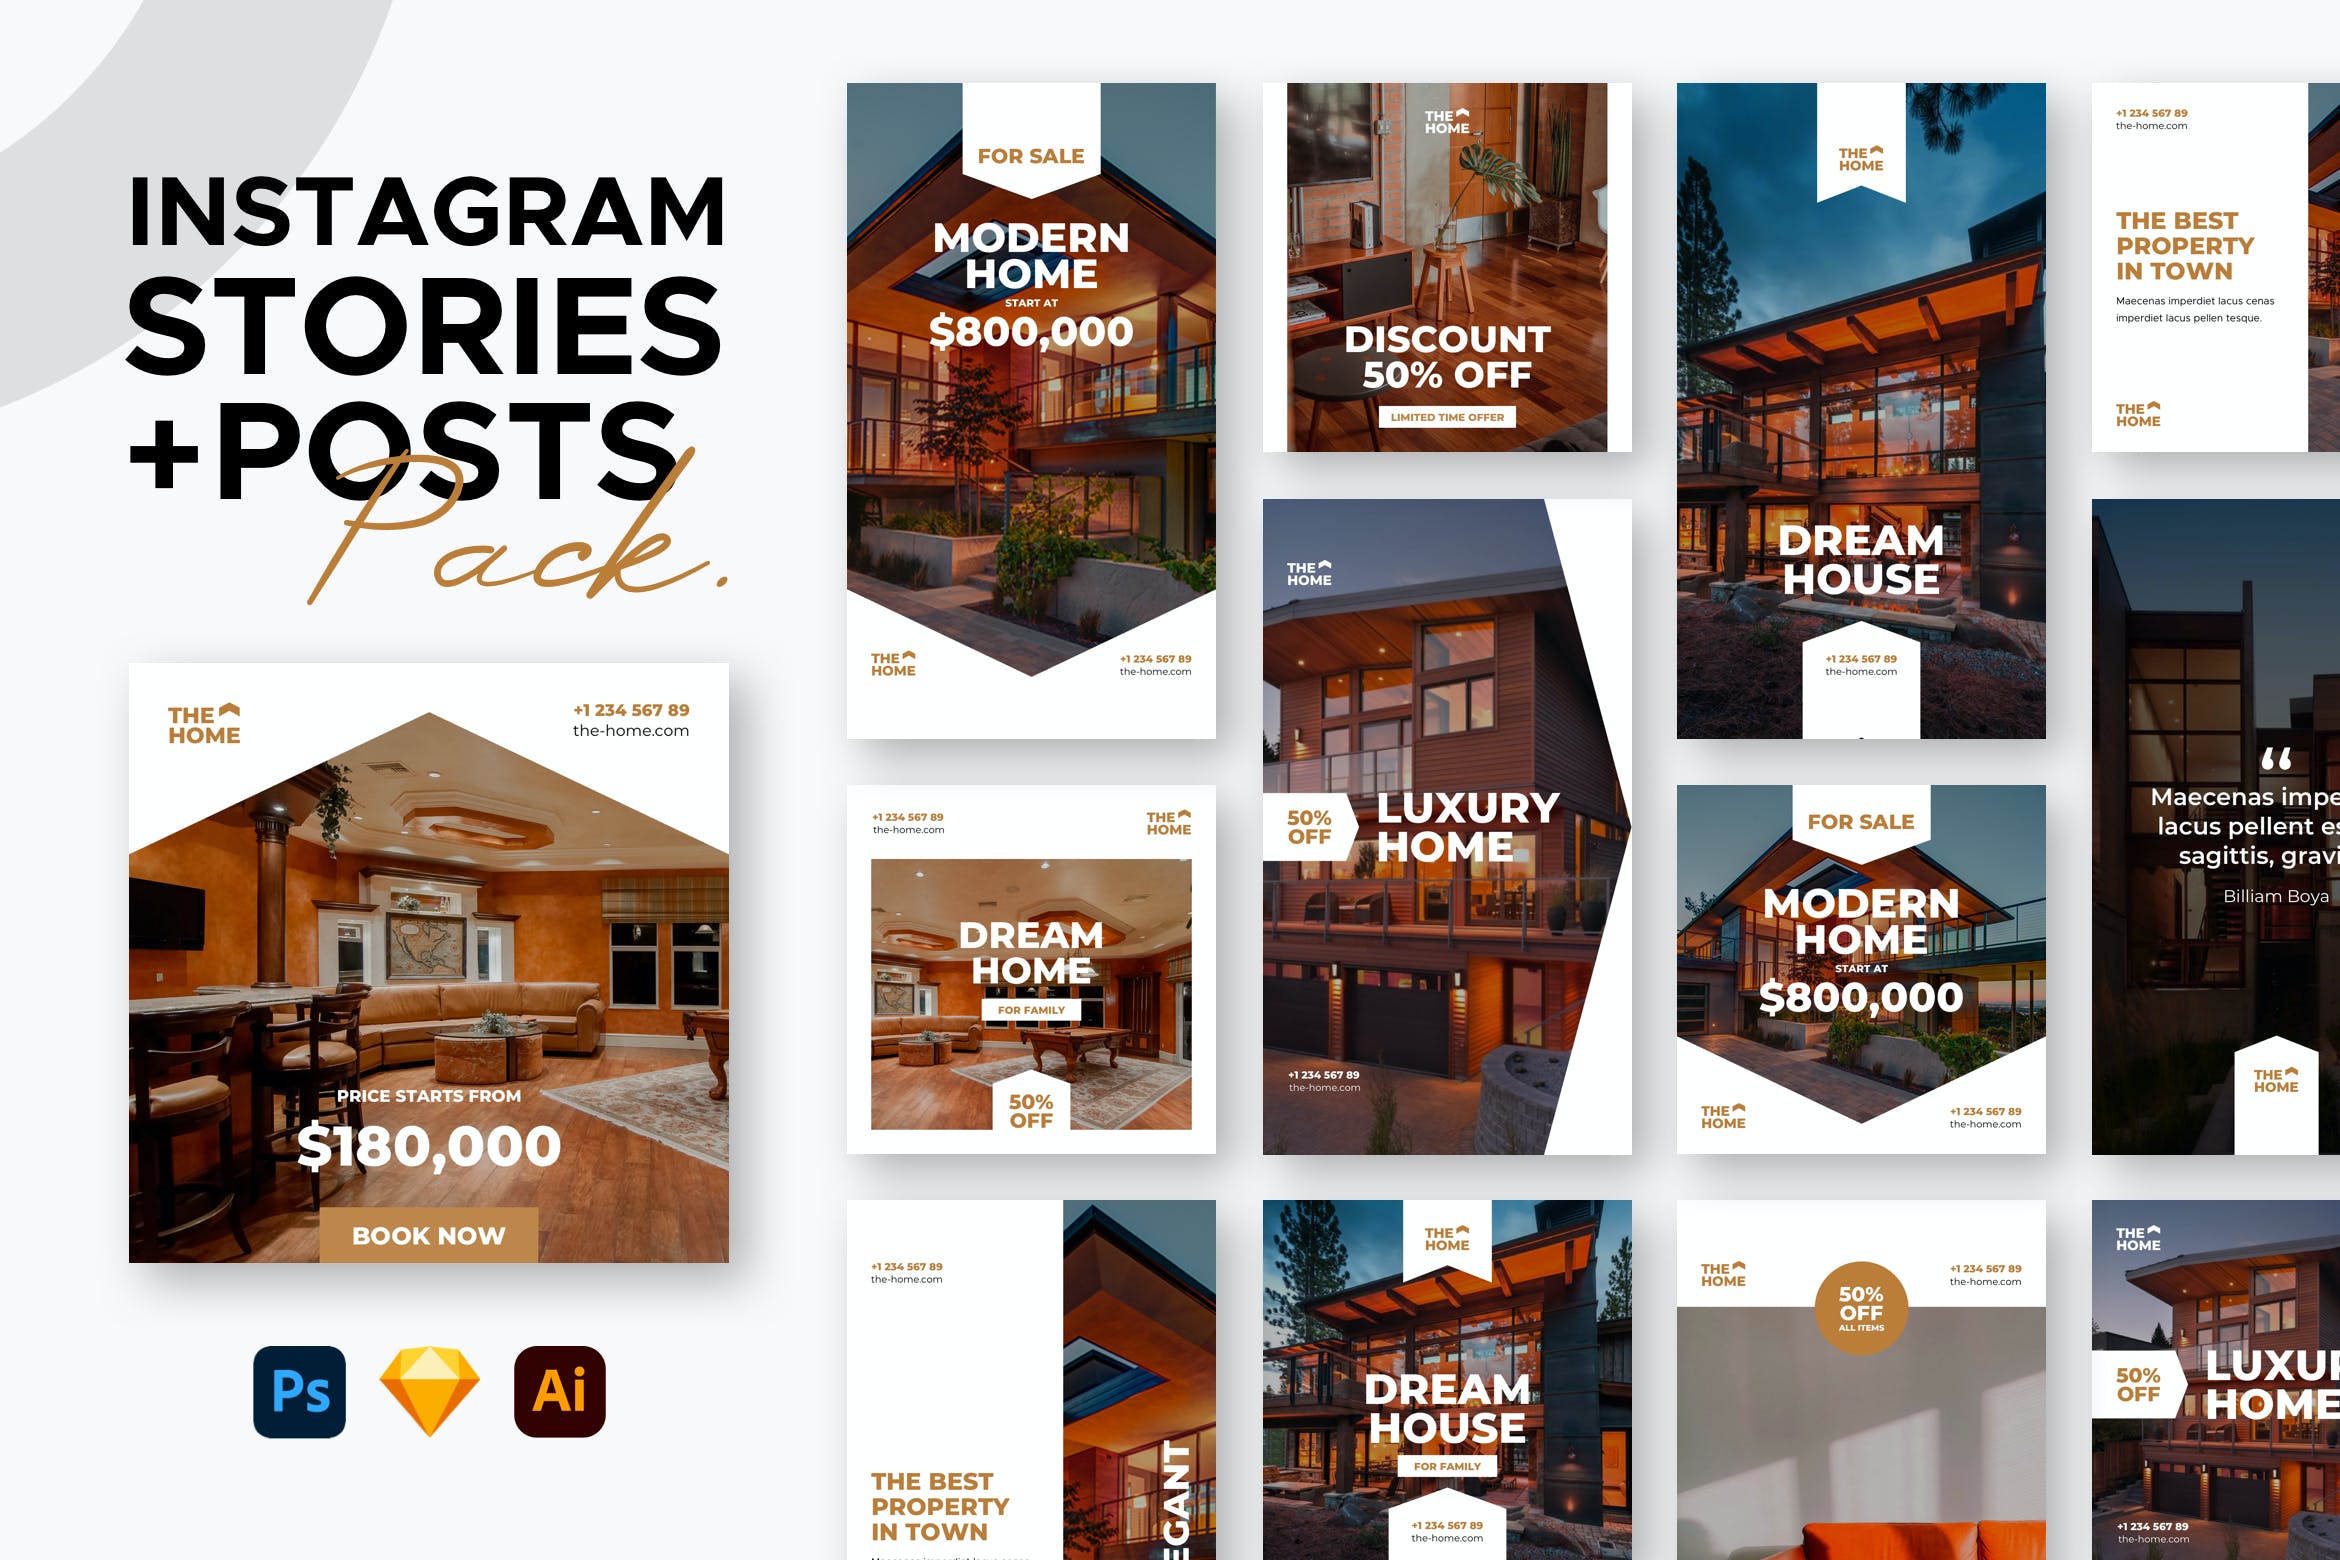 房地产 销售 广告 促销 活动 Instagram故事&帖子社交素材 Instagram Stories + Posts设计素材模板